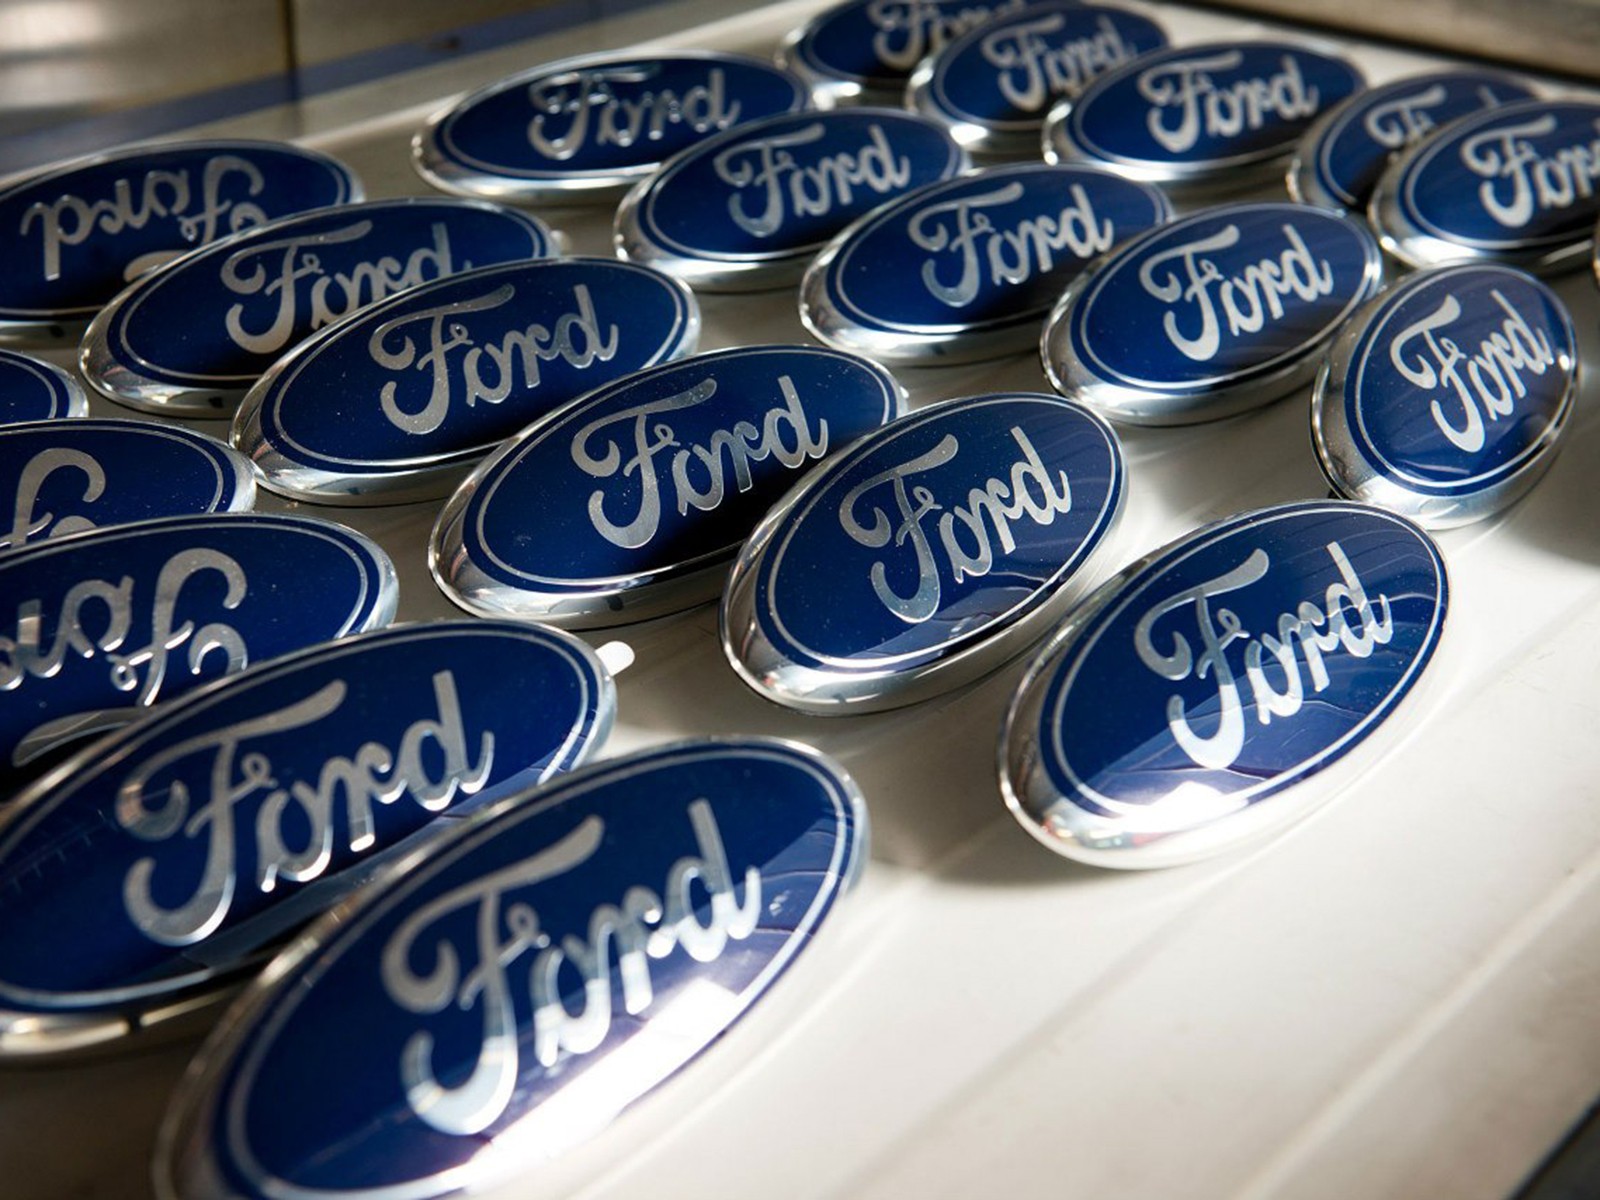 Корпорации машин. Машины компании Форд. Машина фирмы Ford. Фирма Ford Motor. Ford Motor машин в год.